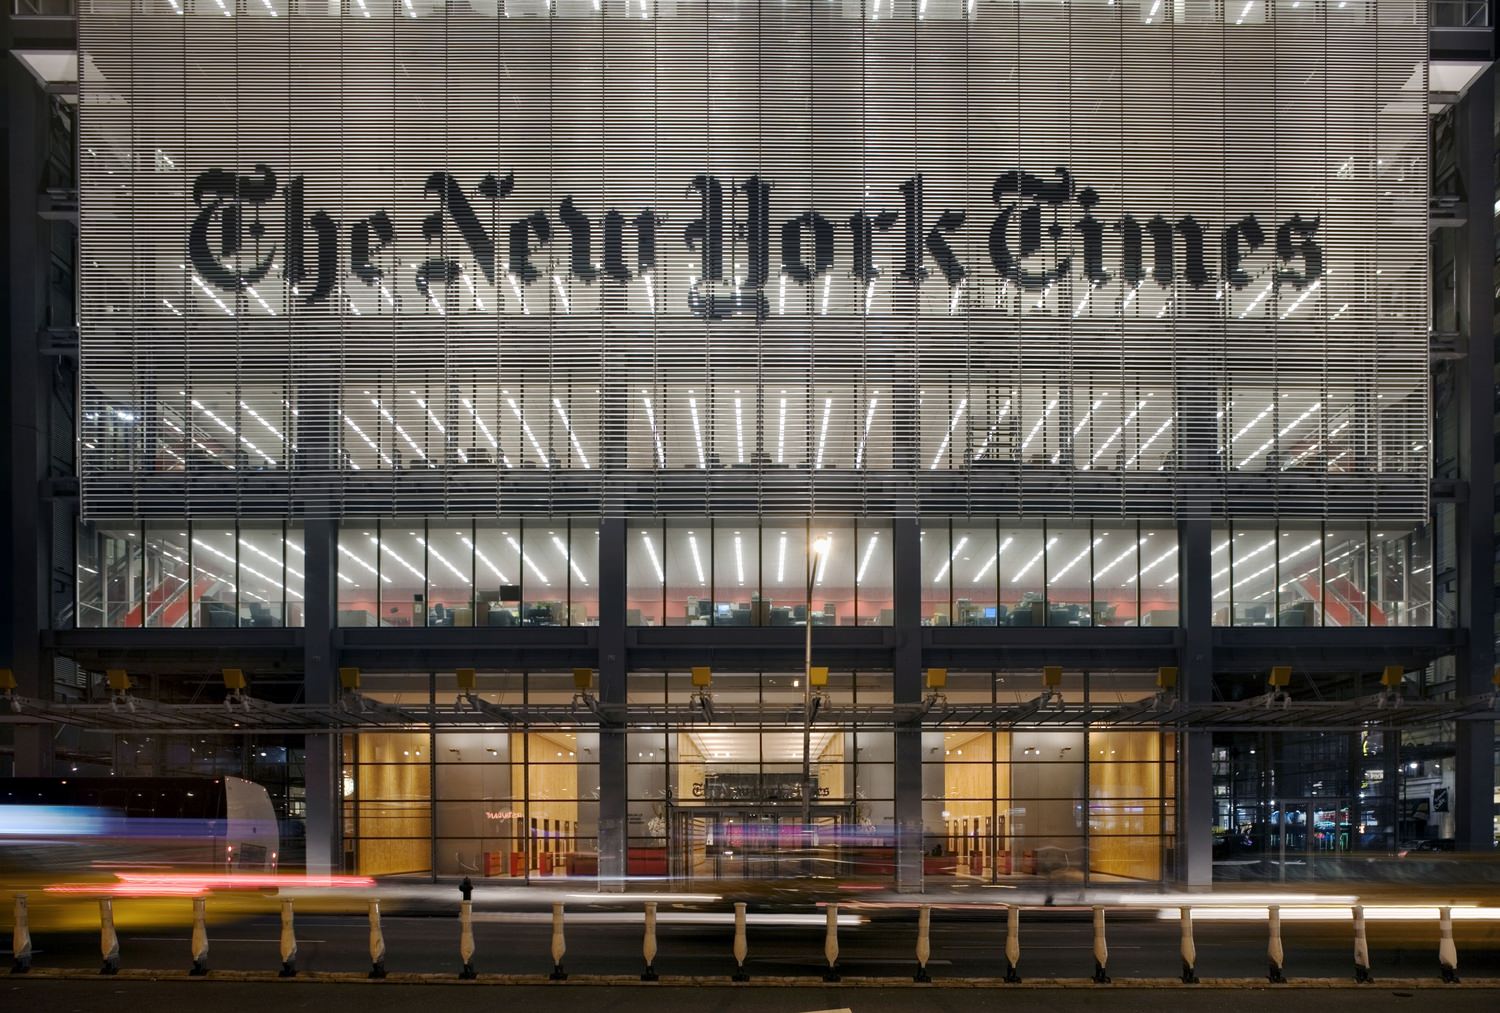 The New York Times aumenta el número de suscriptores gracias a contenido no periodístico